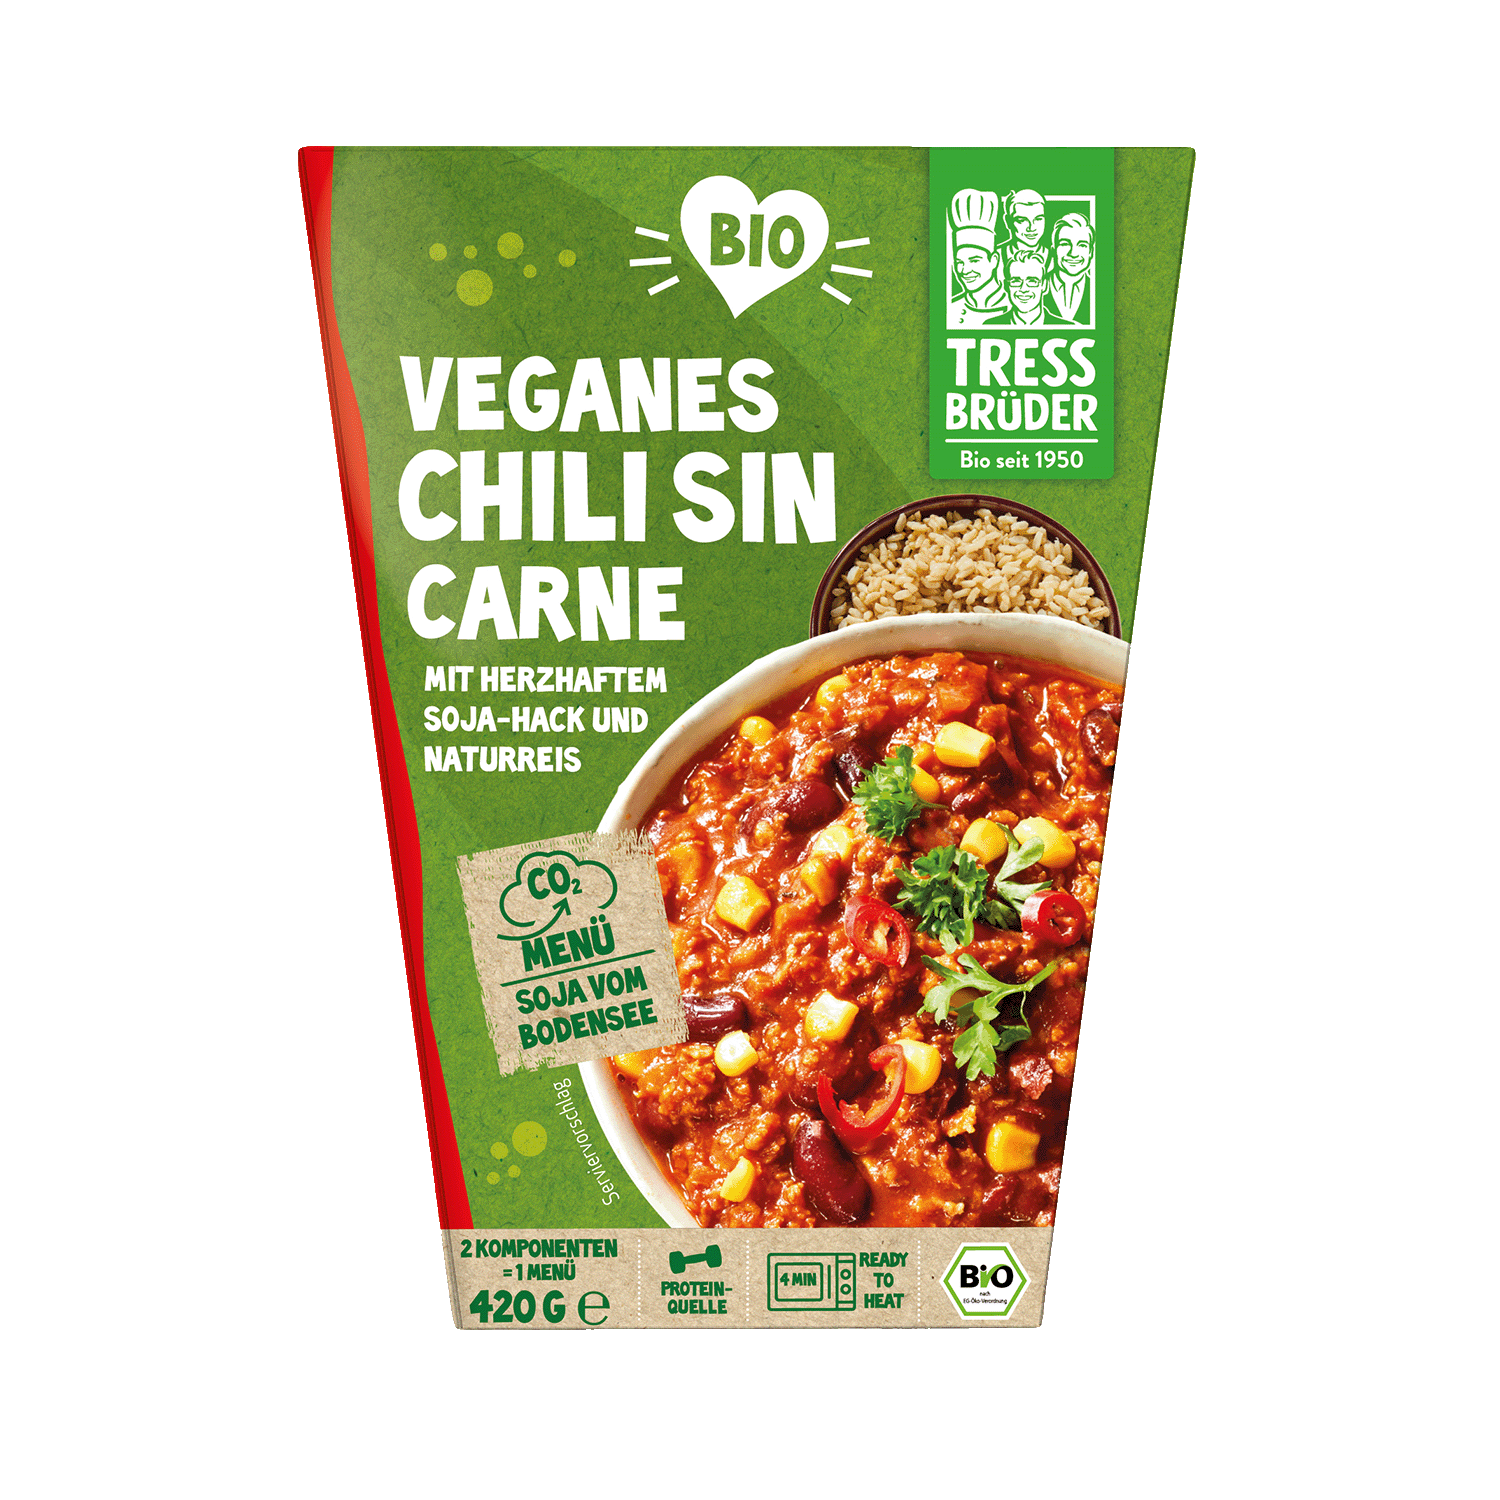 Veganes Chili sin Carne mit herzhaftem Soja-Hack und Naturrreis, BIO, 420g